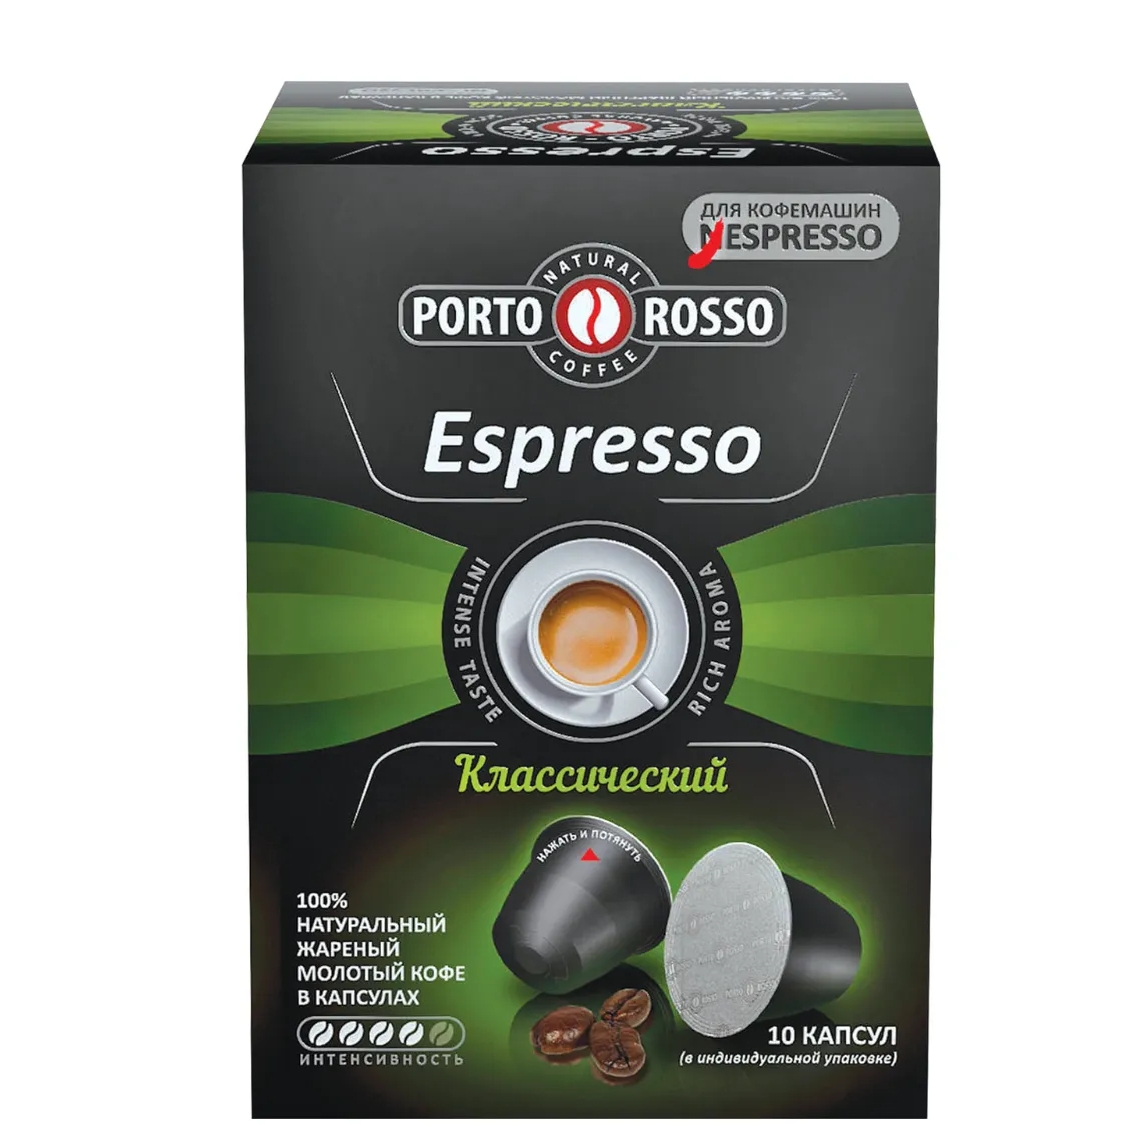 Кофе в капсулах Porto Rosso Espresso Классический, 10х5 г кофе в капсулах l or espresso lungo estremo 10 x 52 г